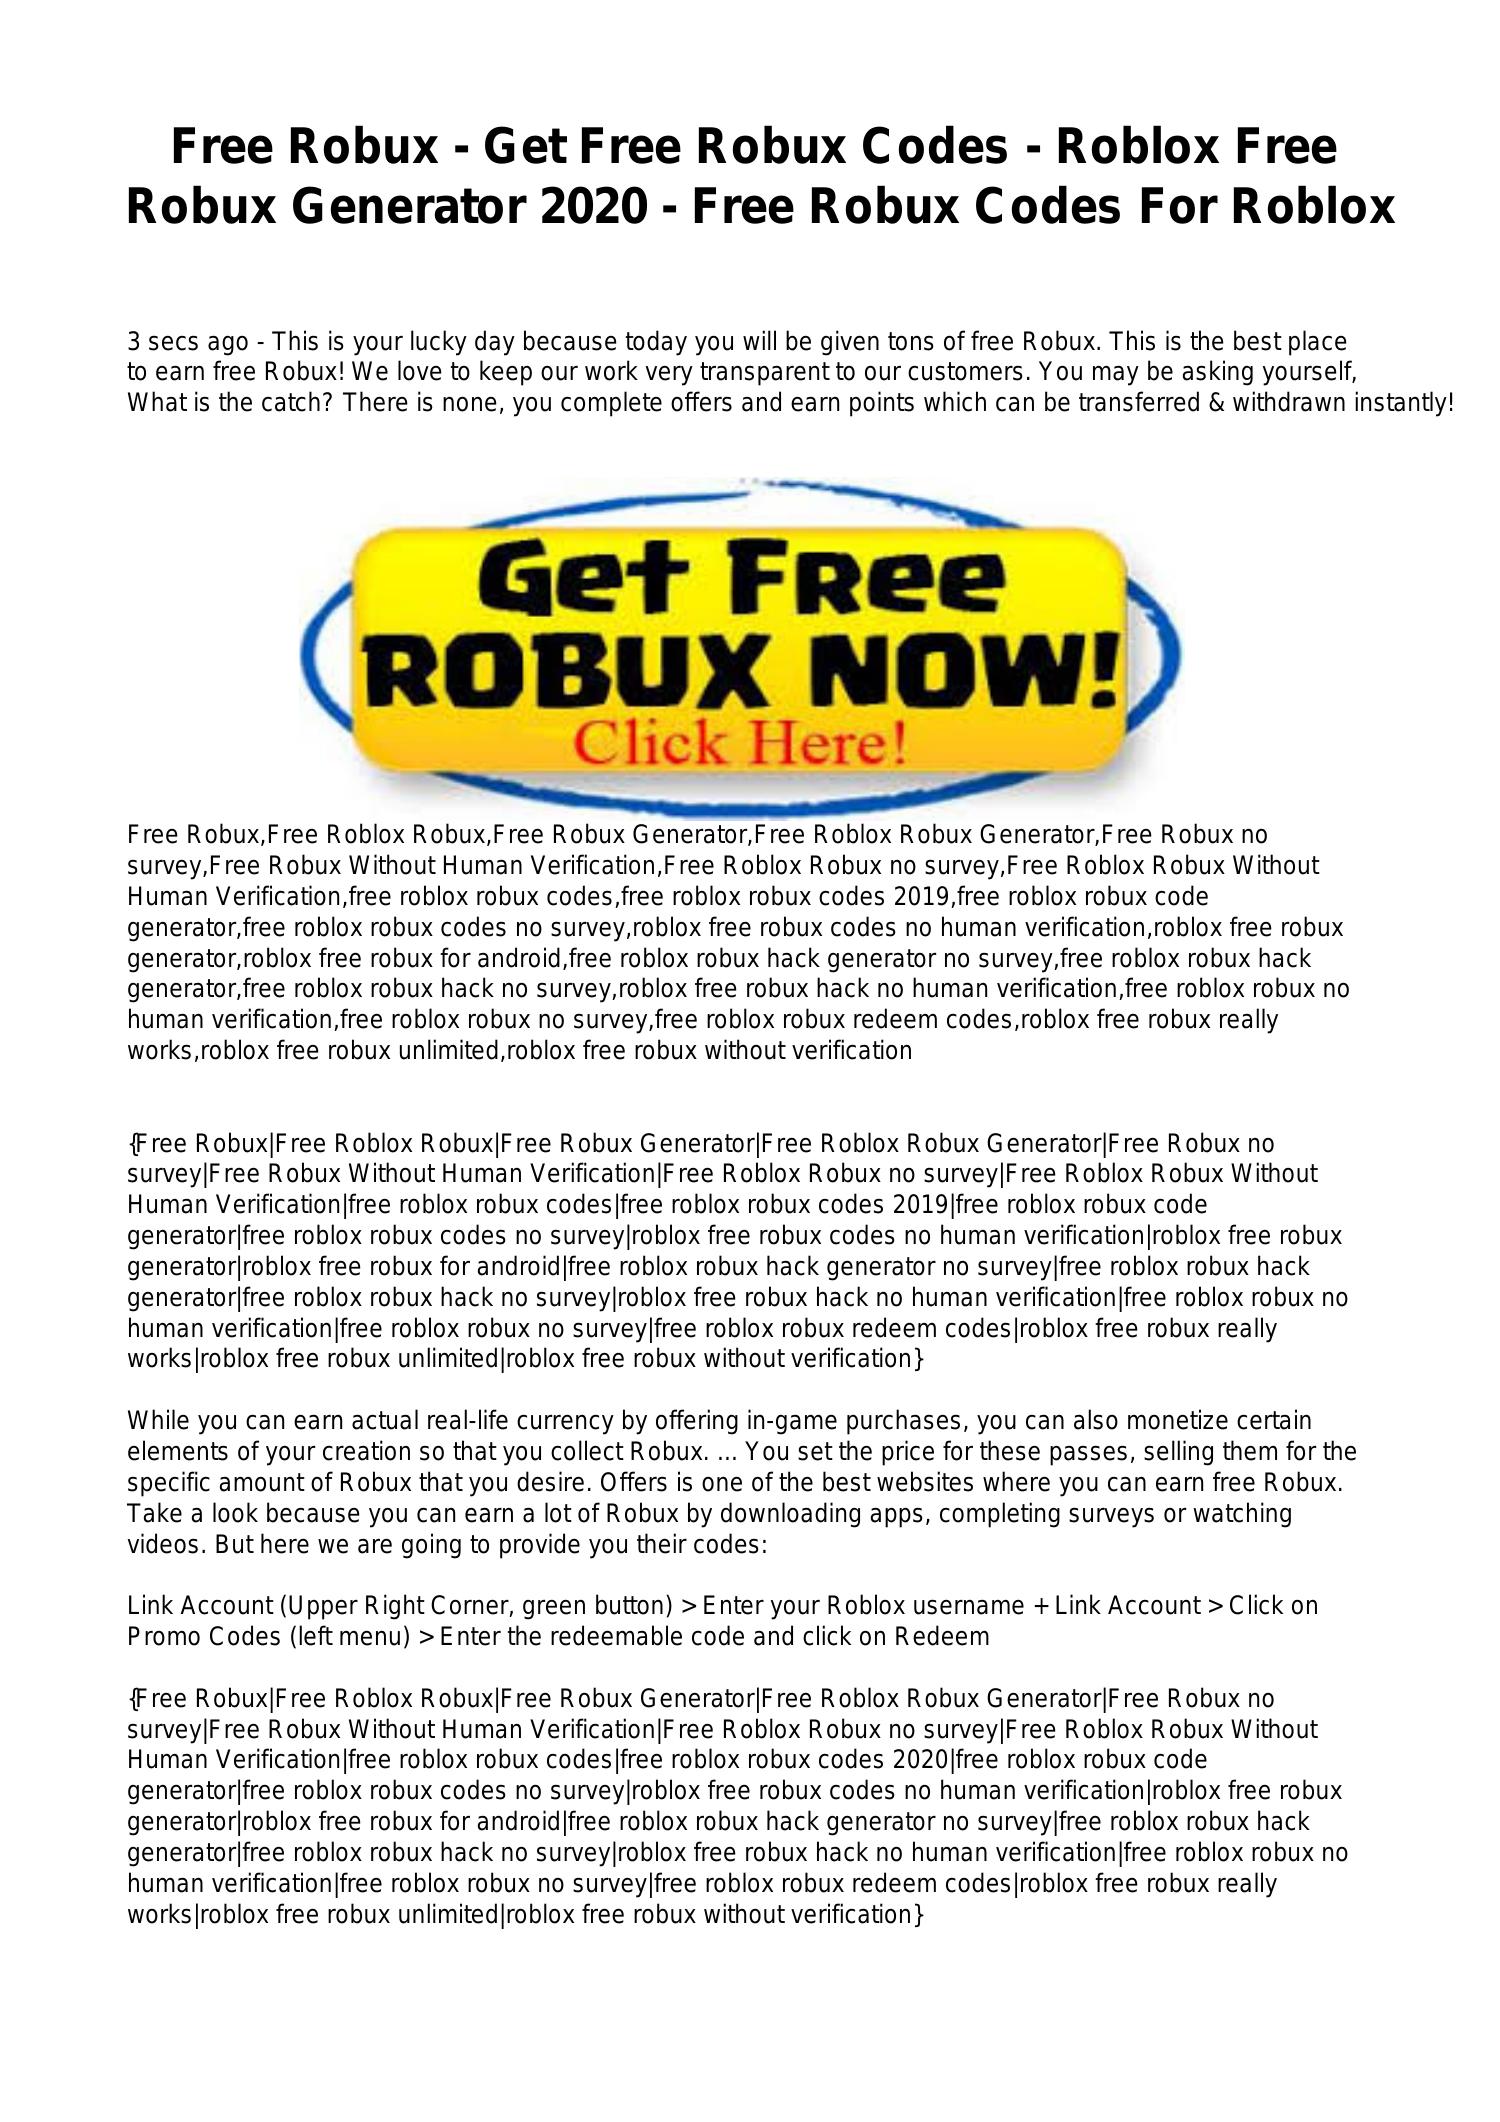 Free Robux Get Free Robux Codes Roblox Free Robux Generator 2020 Free Robux Codes For Roblox Pdf Docdroid - how to get free robux codes roblox how to get free robux